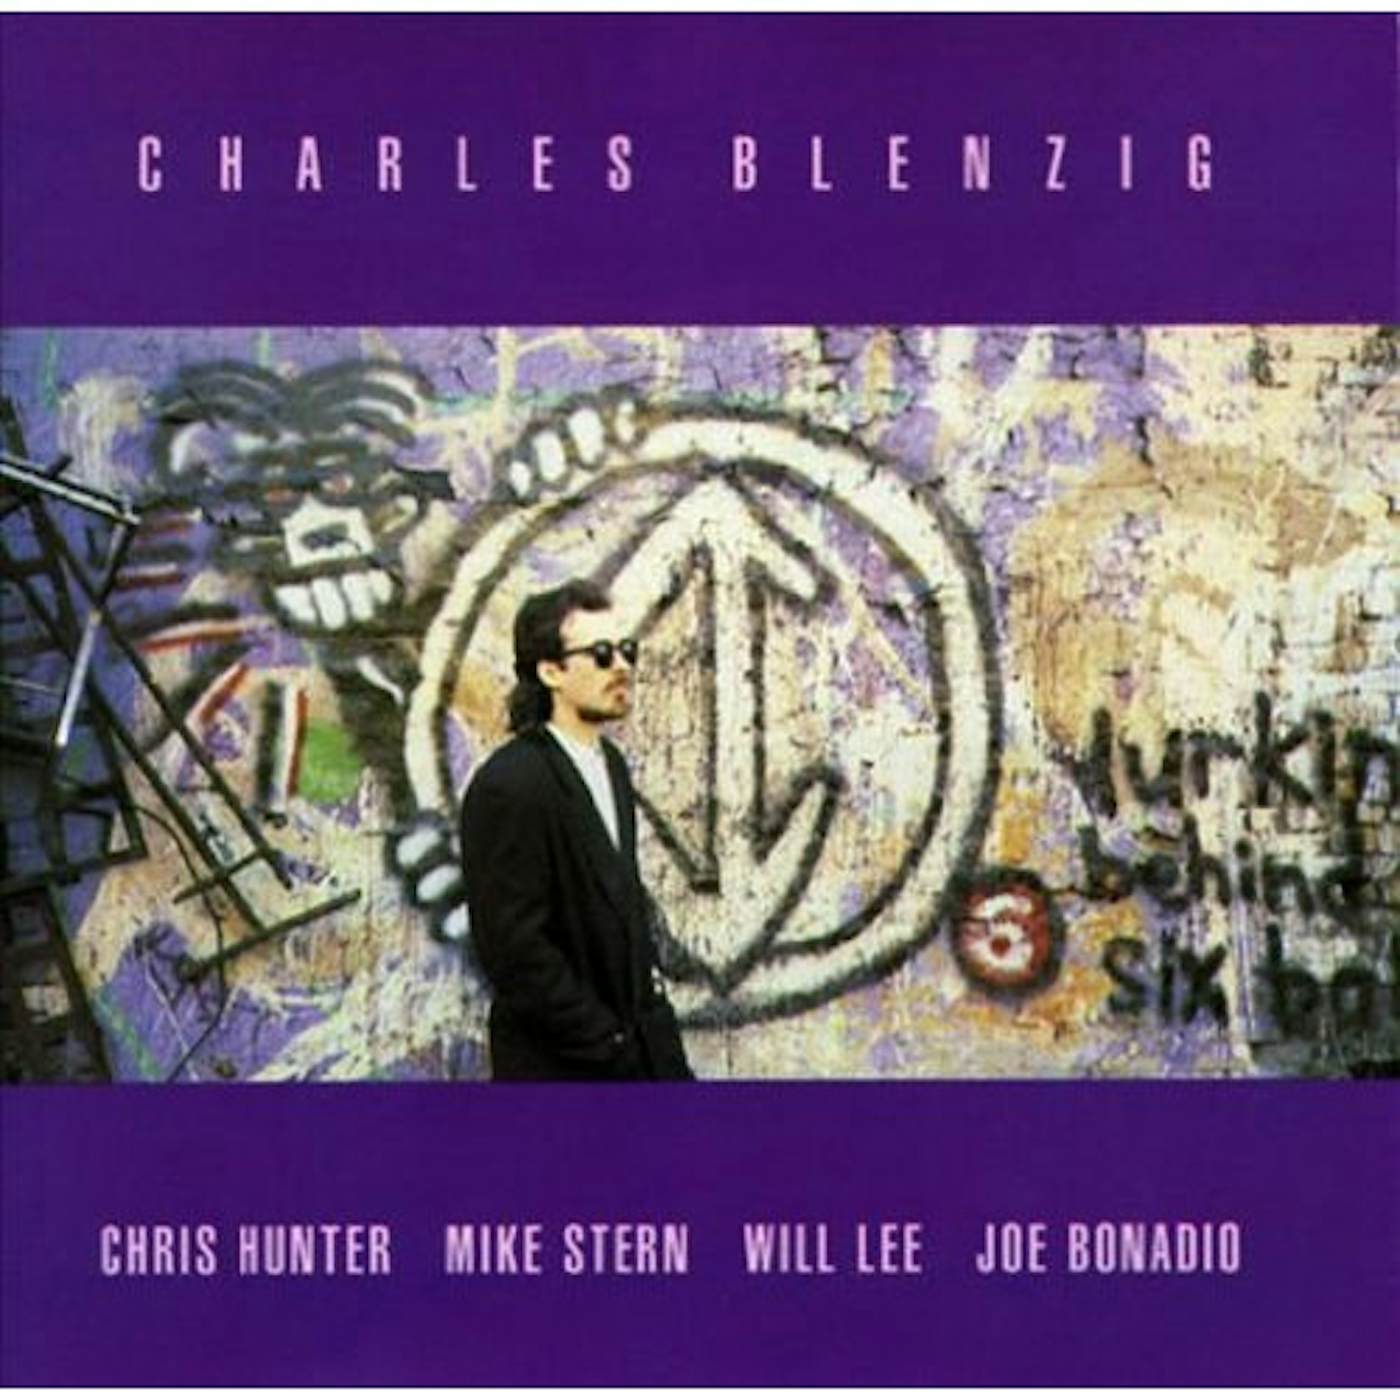 CHARLES BLENZIG CD